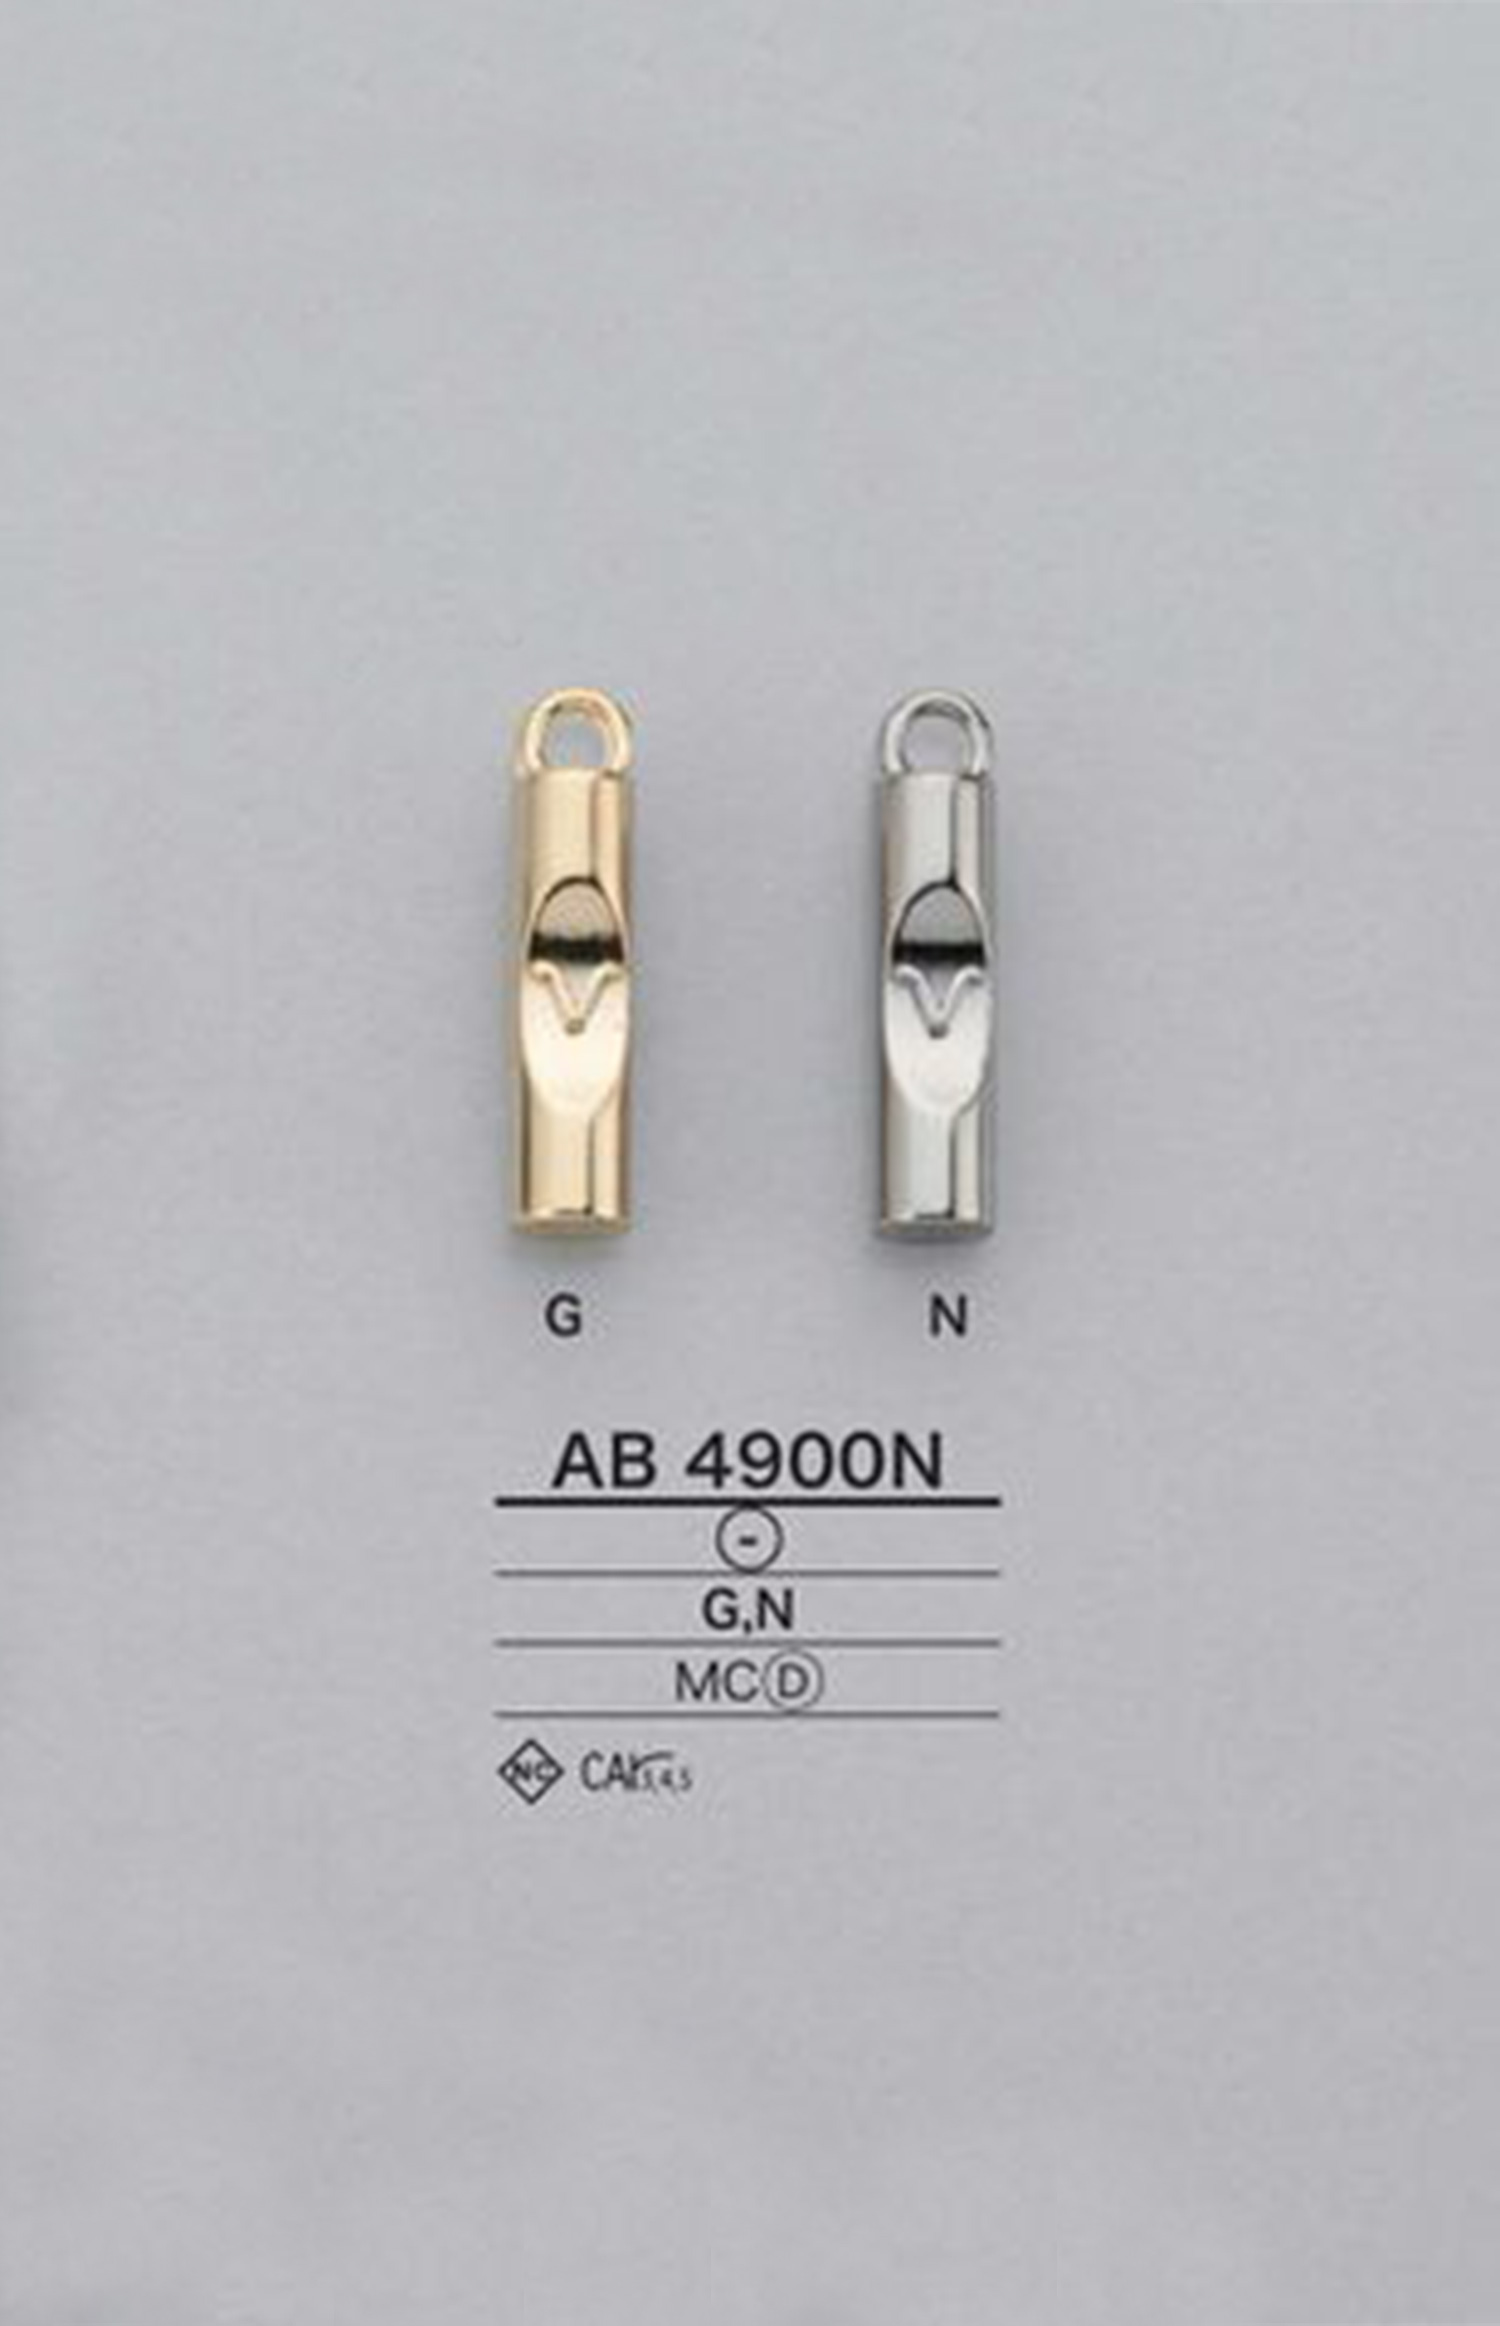 AB4900N 원통 지퍼 포인트(지퍼 슬라이더) IRIS